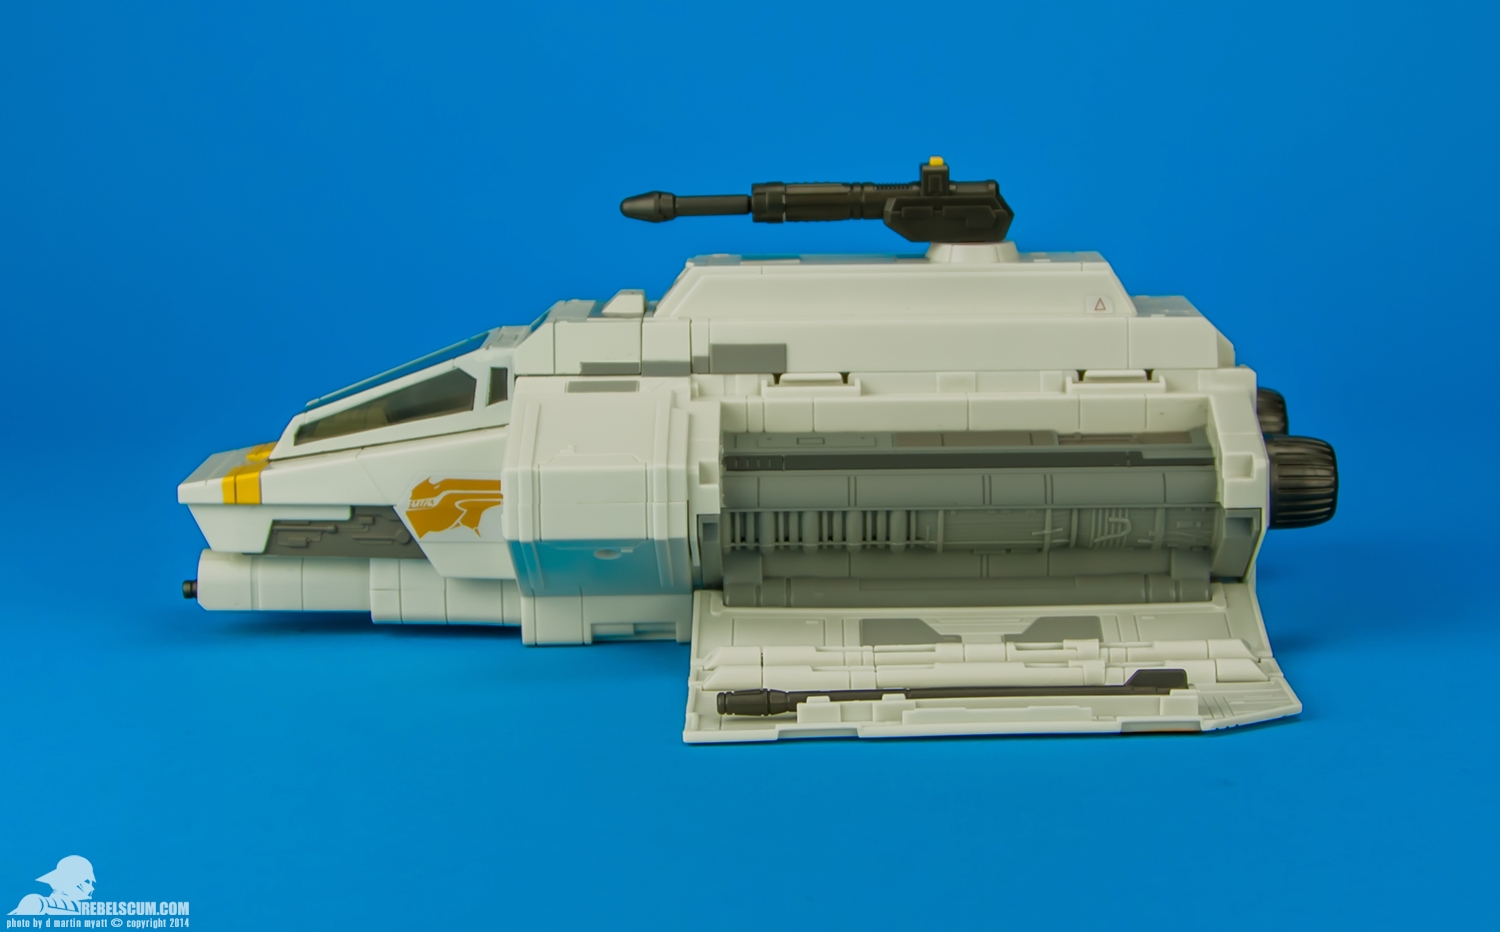 Rebels-Vehicles-series-1-The-Phantom-Attack-Shuttle-007.jpg